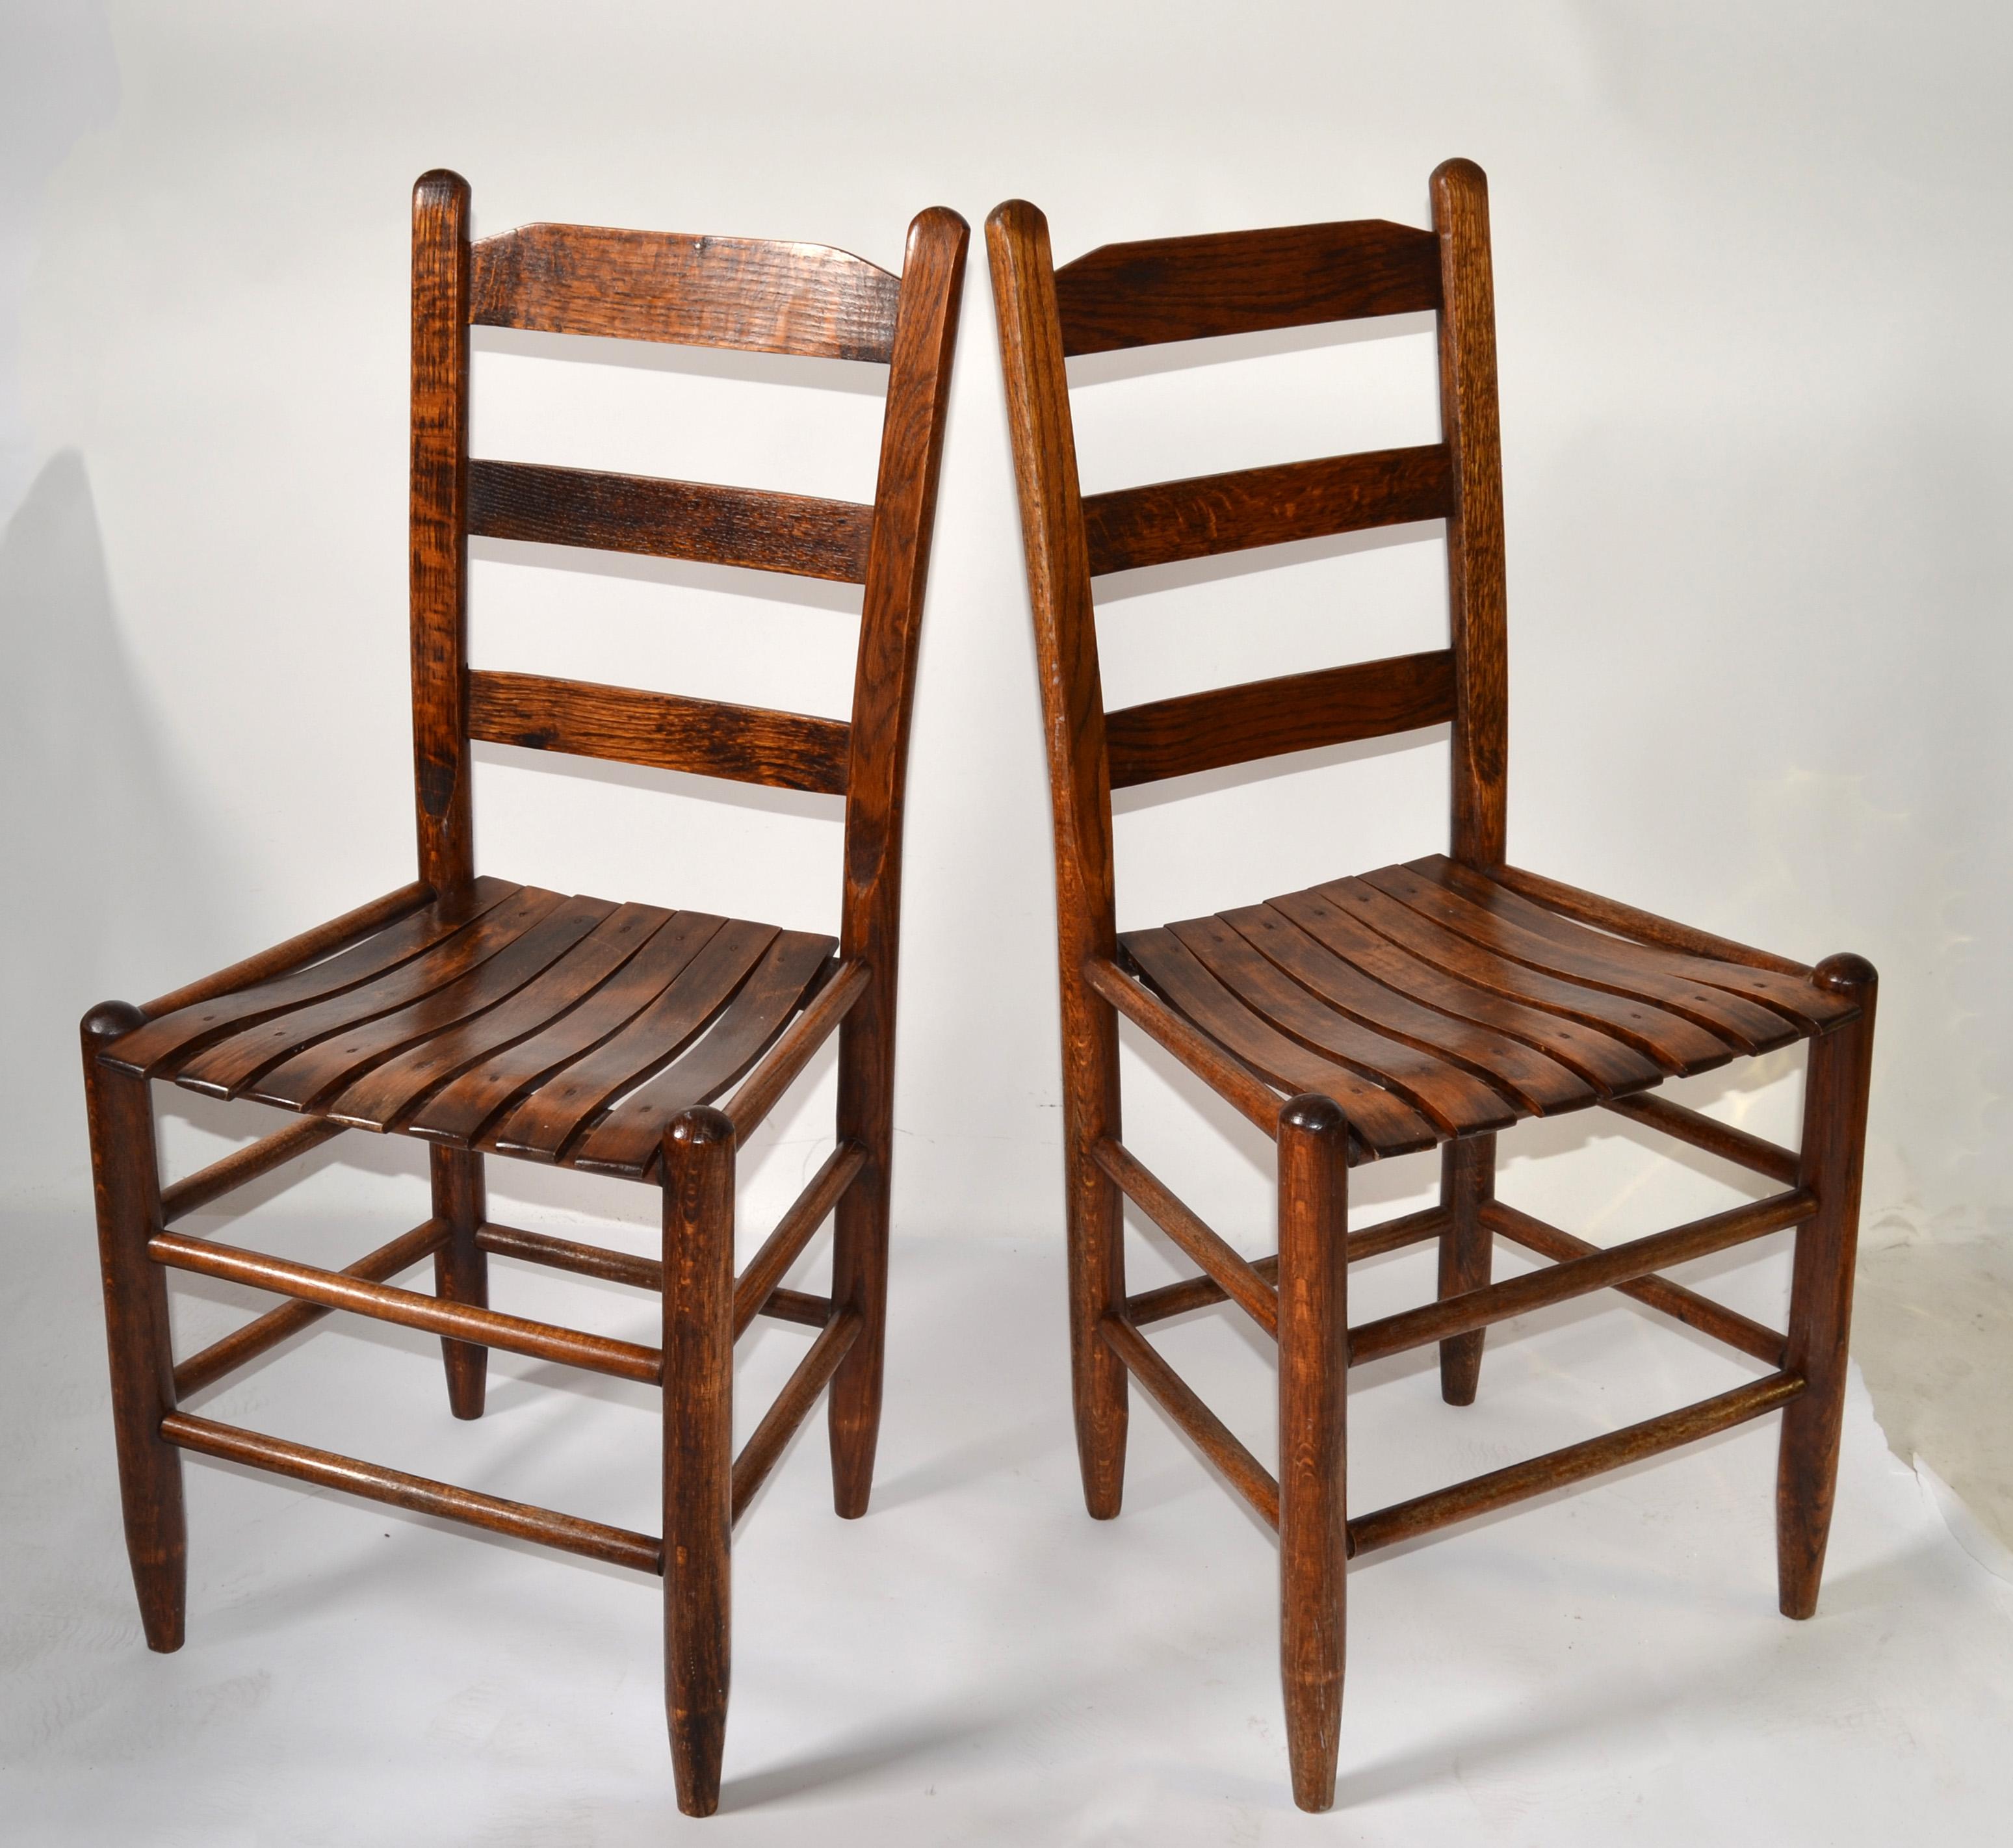 Paire de chaises d'appoint, de bistro ou de salle à manger en chêne rustique, faites à la main, dans le style de Charlotte Perriand et de la période moderne du milieu du XXe siècle.   
Ce fauteuil en bois de chêne massif est doté d'un dossier en